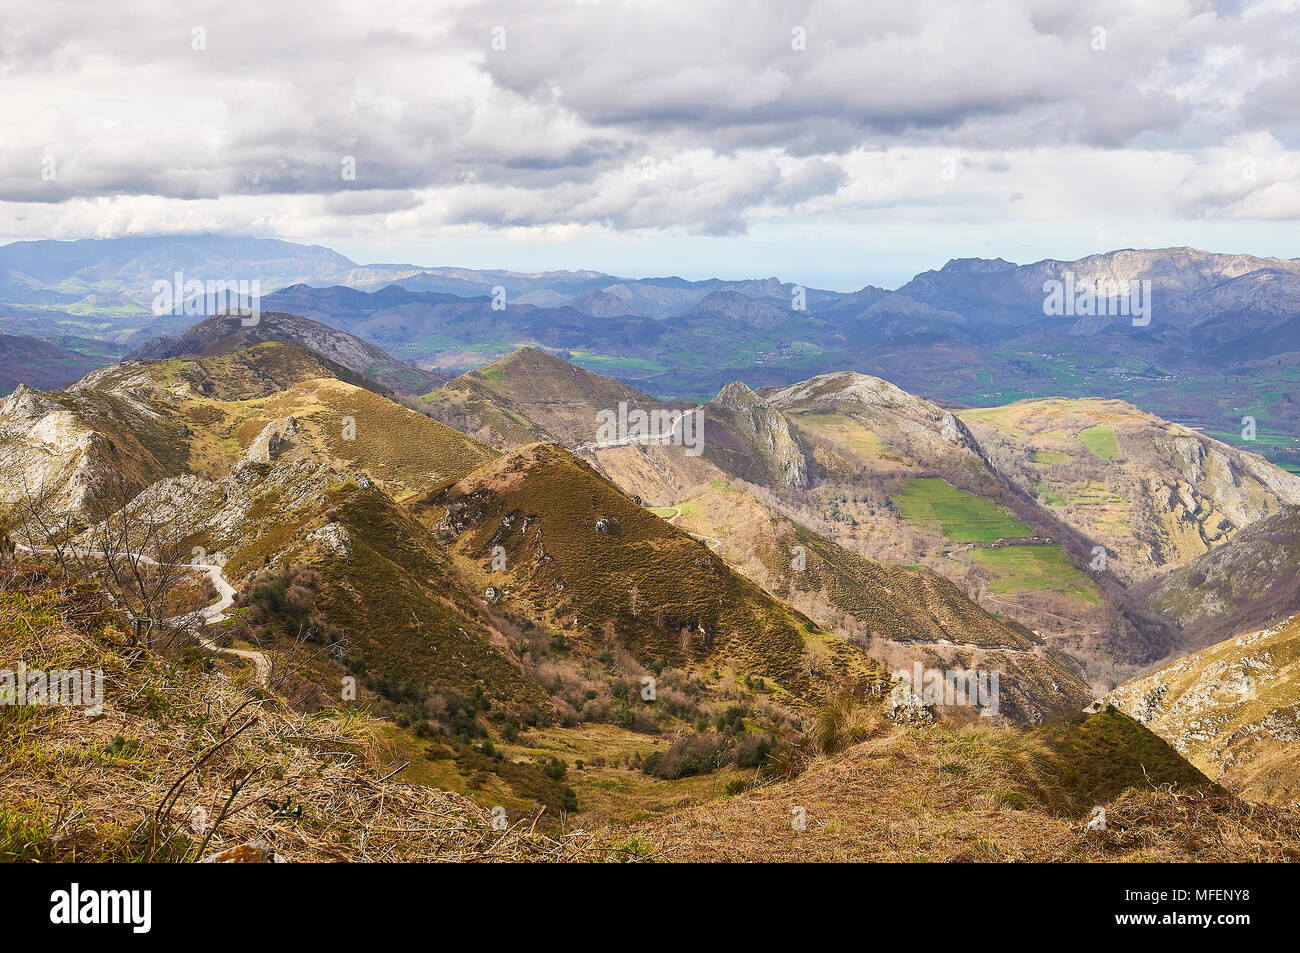 Vue sur le paysage de la chaîne de montagnes Cantabrie depuis Mirador de la Reina dans le parc national Picos de Europa (Cangas de Onís, Asturies, Espagne) Banque D'Images